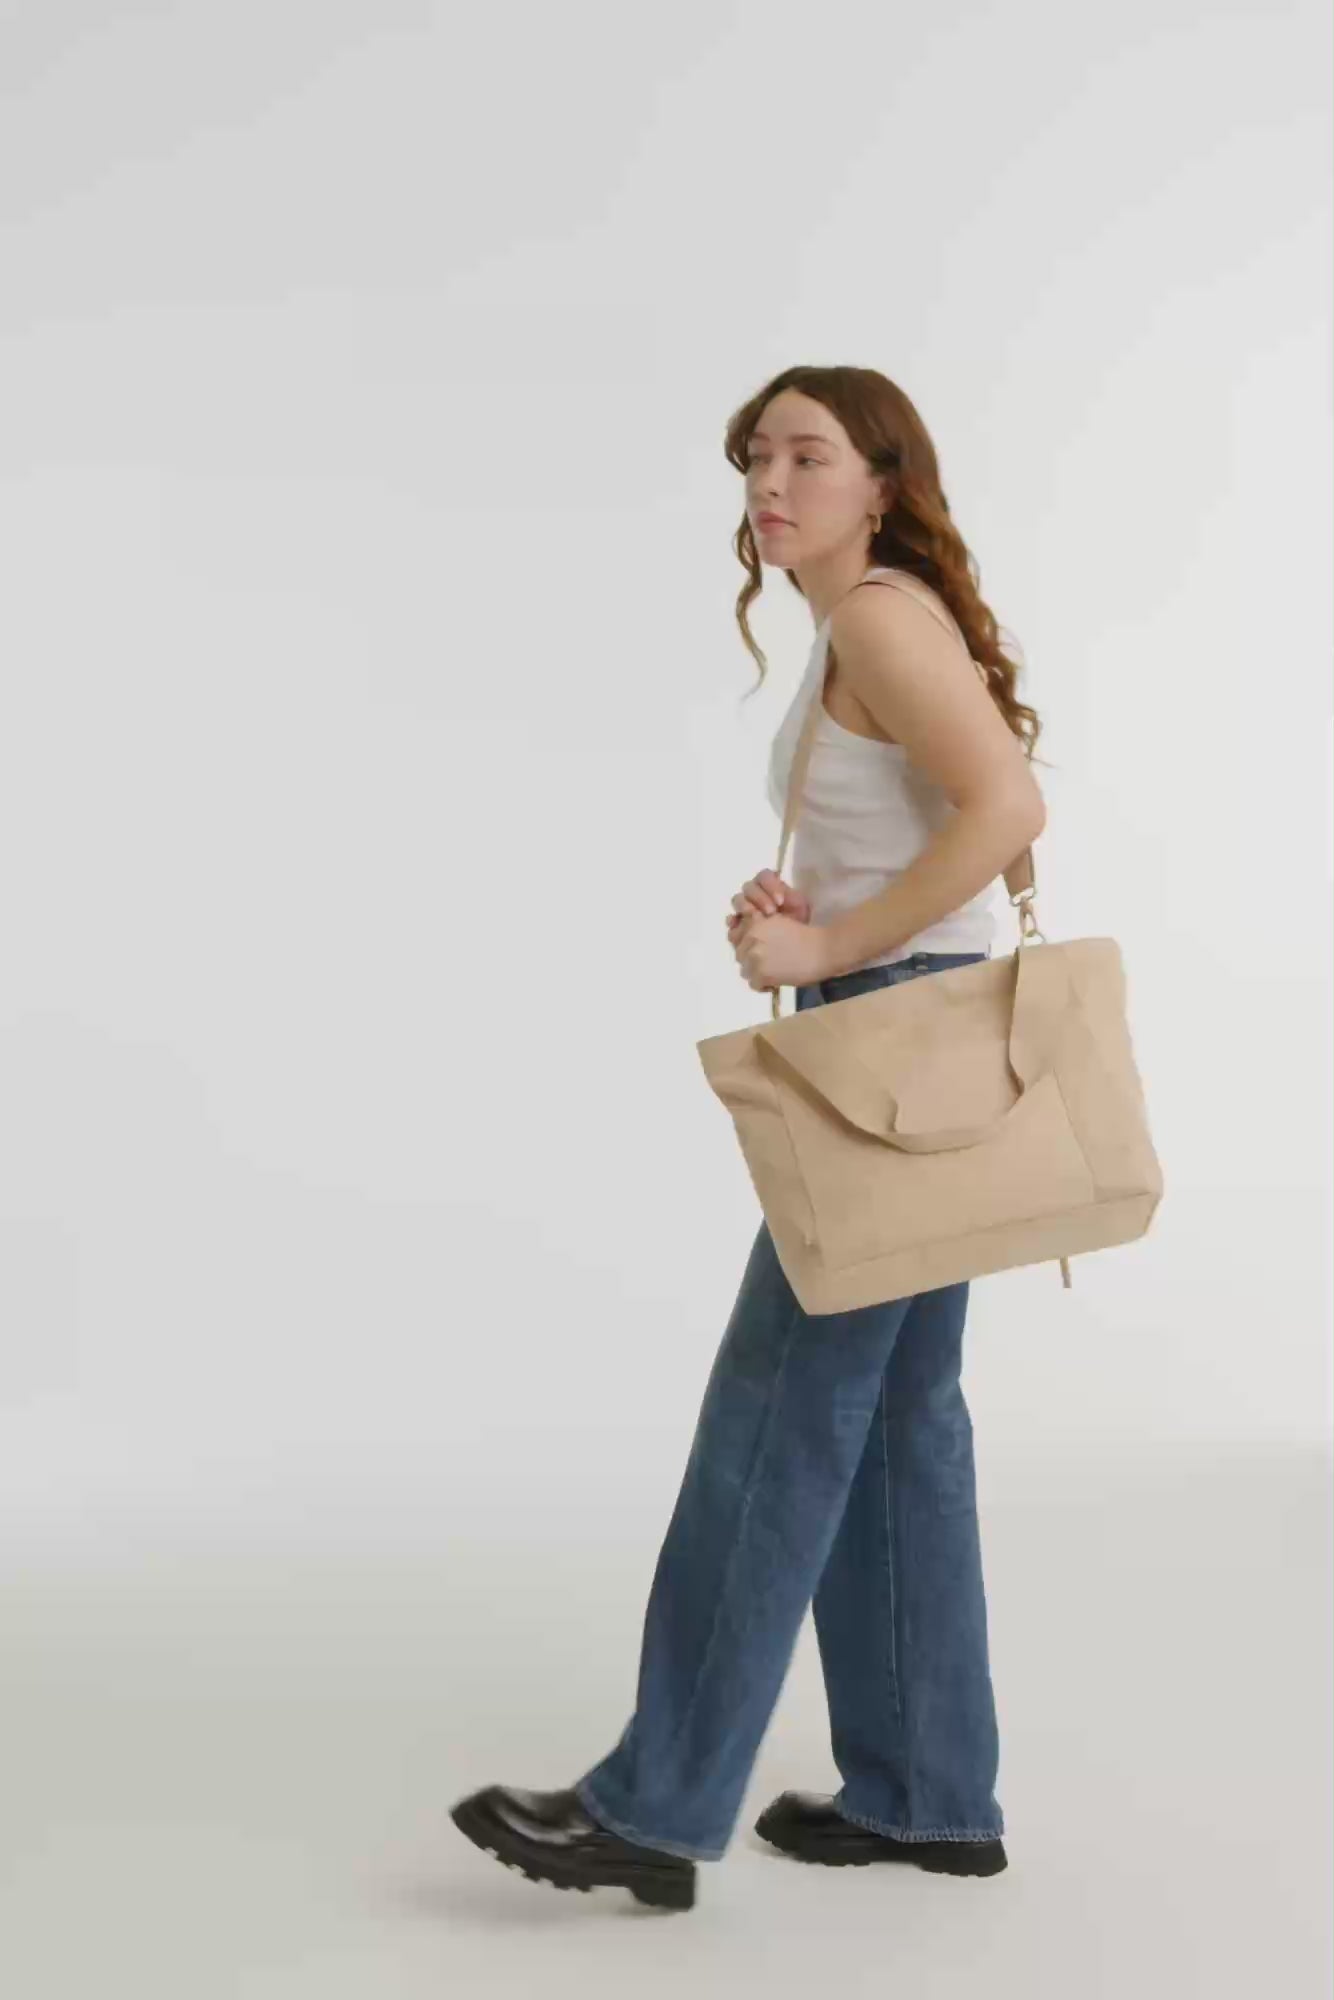 Shoulder Straps Red - Shoulder Straps - Briana's Handbags